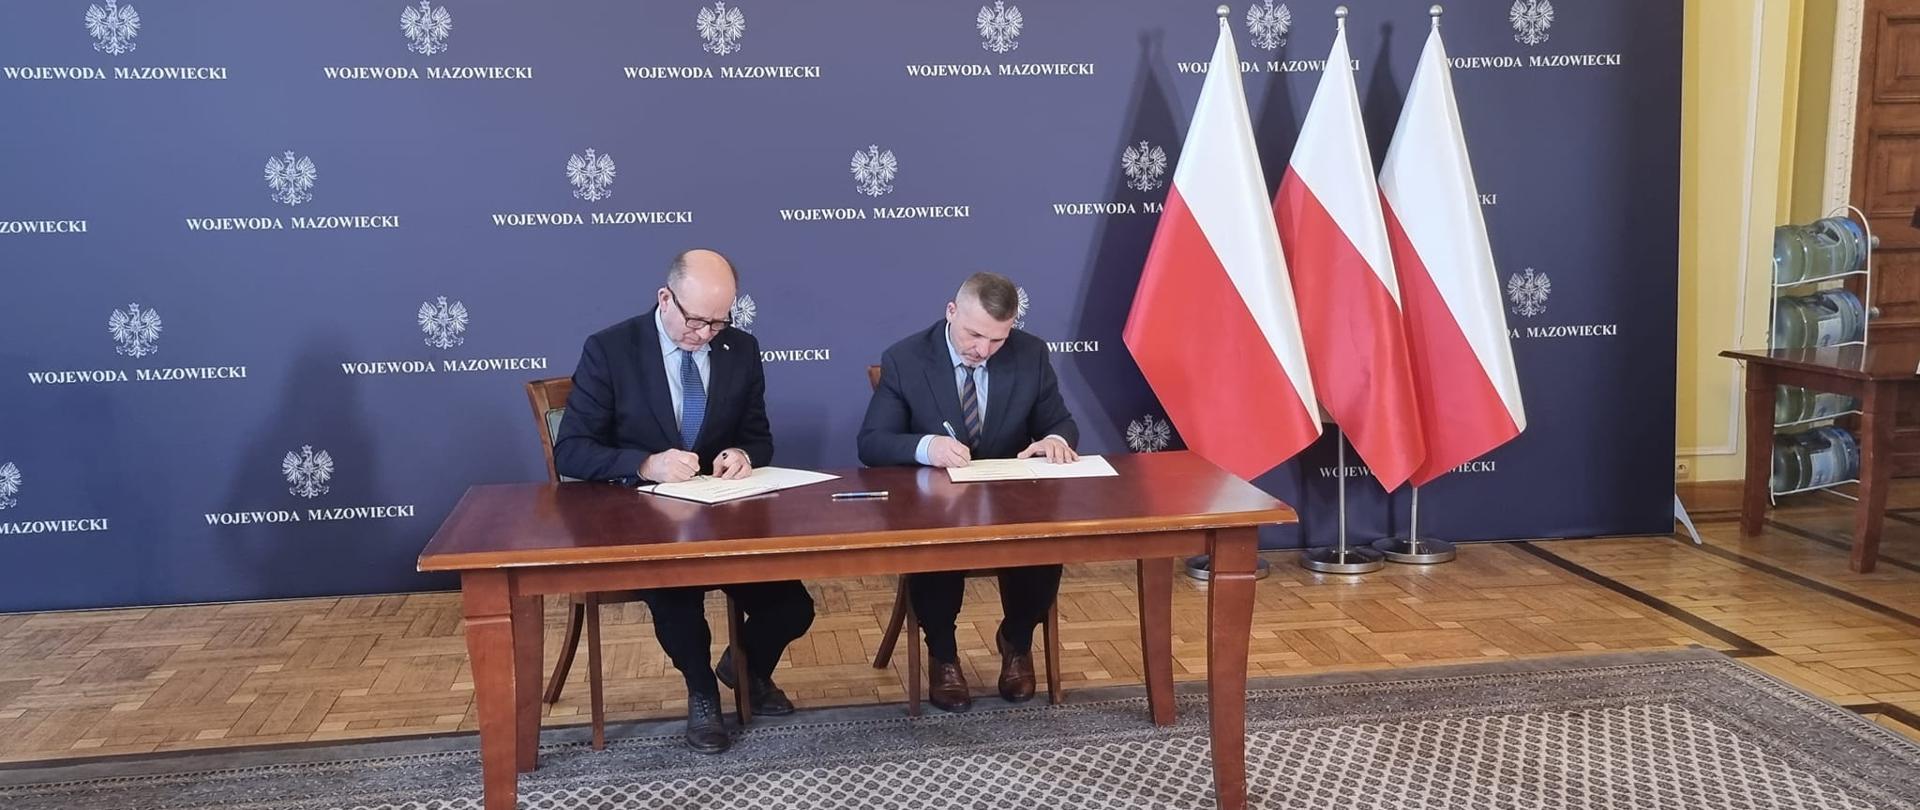 Podpisanie umowy w Mazowieckim Urzędzie Wojewódzkim 12.01.2023 r.